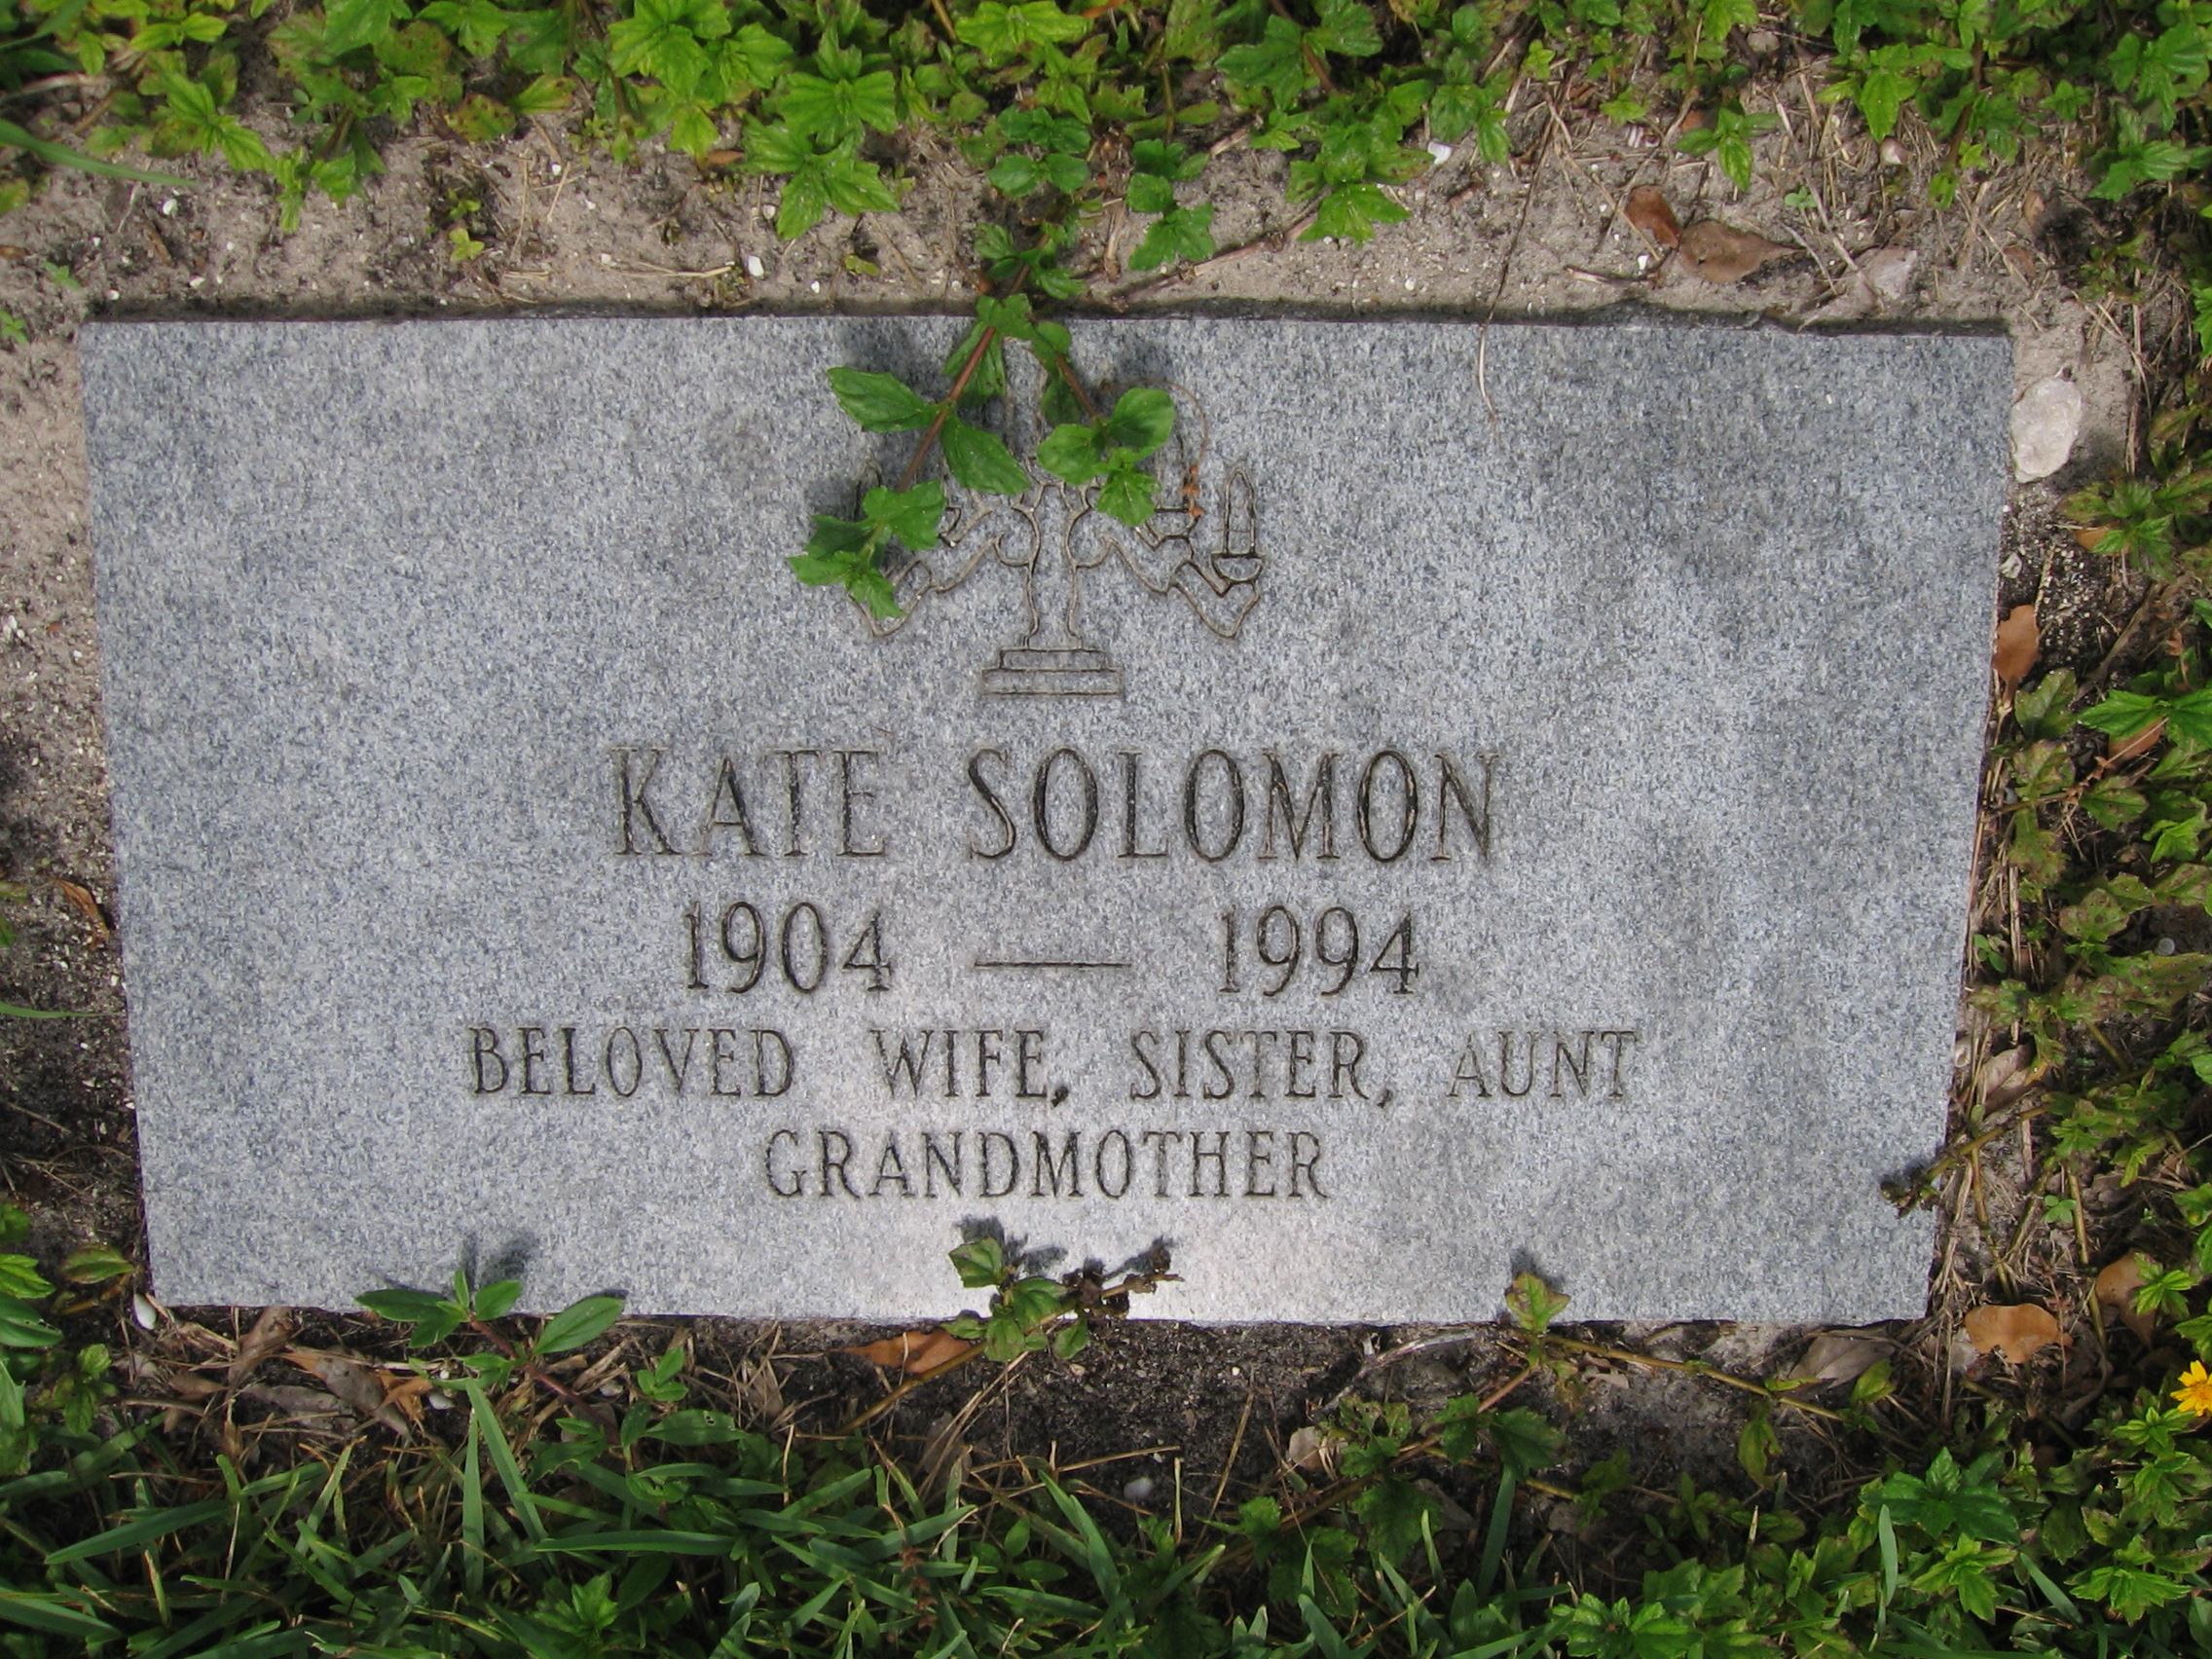 Kate Solomon